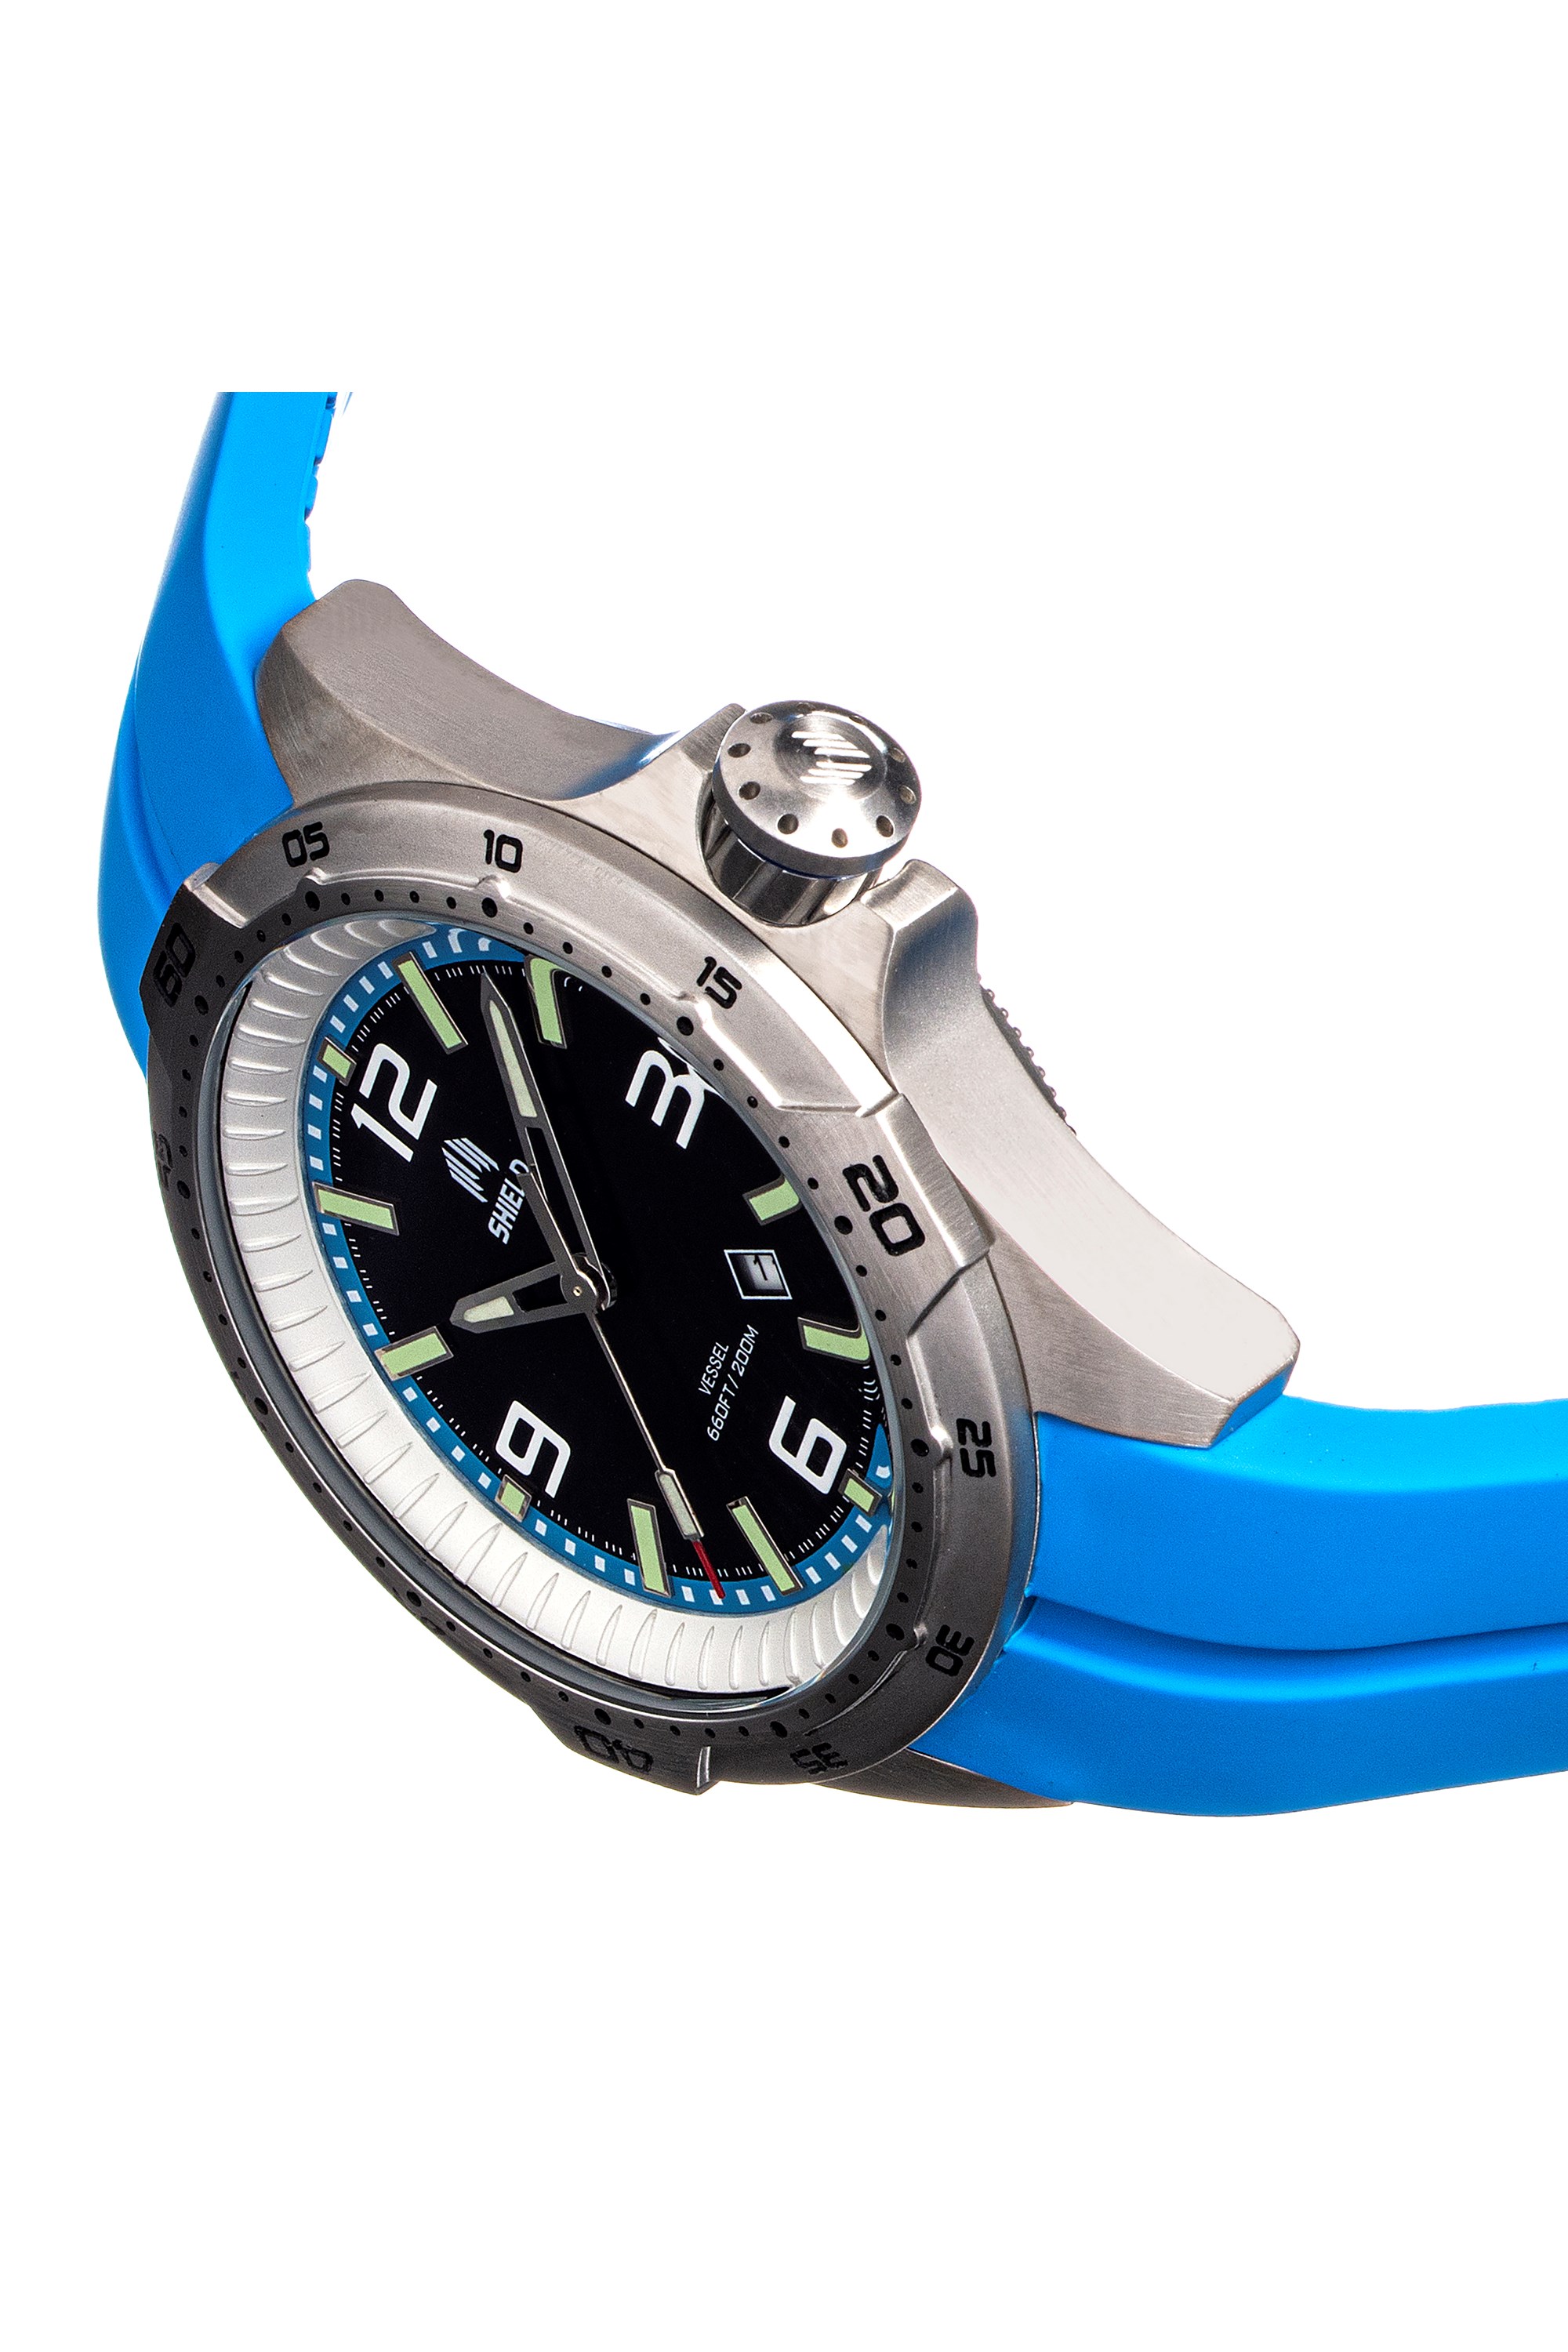 Vincero Vessel Watch Limited Edition Men's Blue Dial